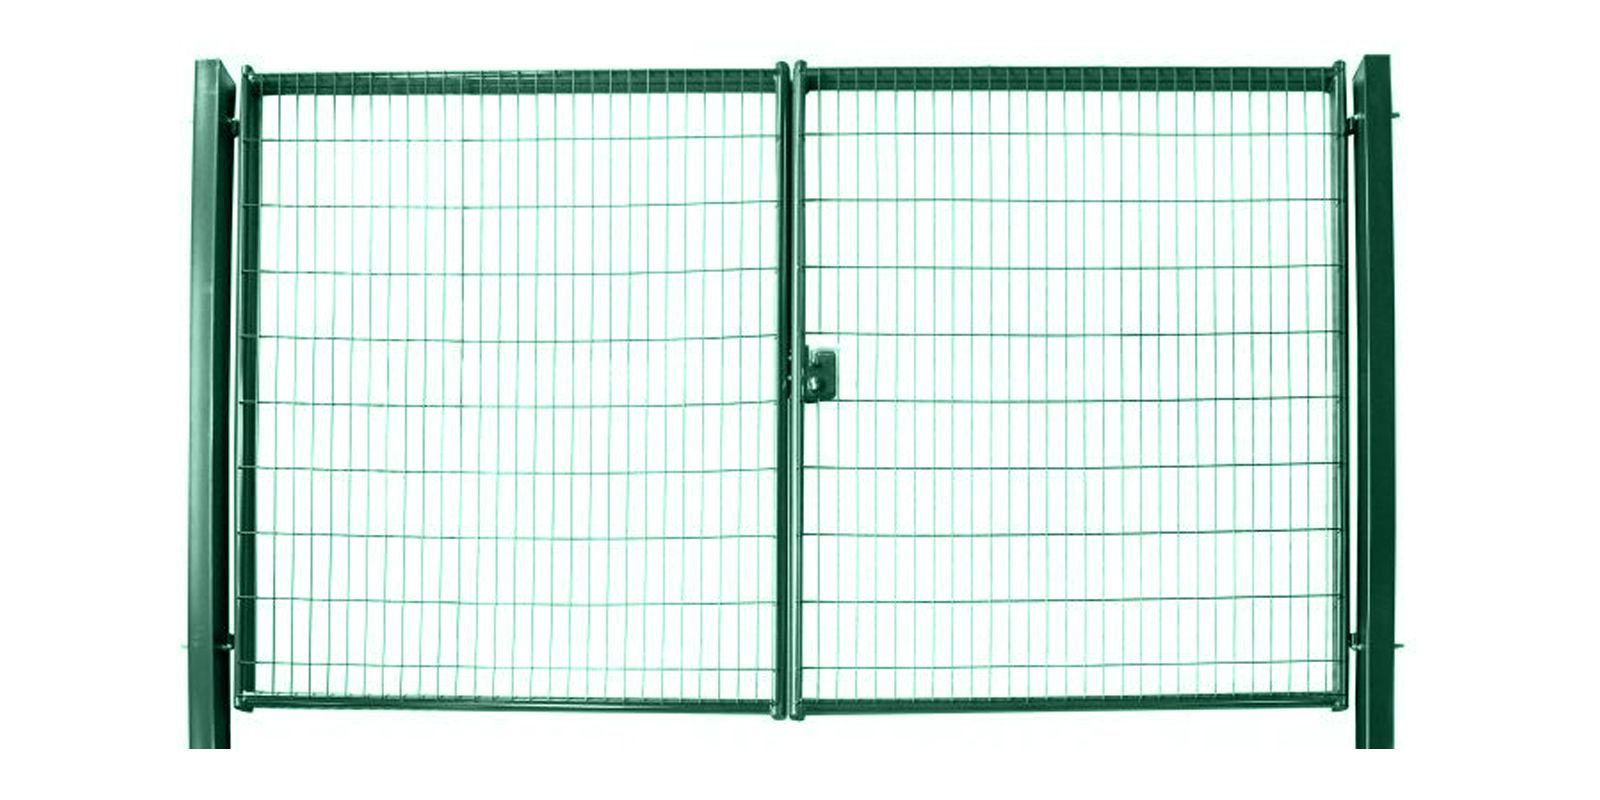 Купить Ворота для панельного ограждения Medium шириной 3,50 м с высотой сетки 2,03 м в цвете RAL 6005